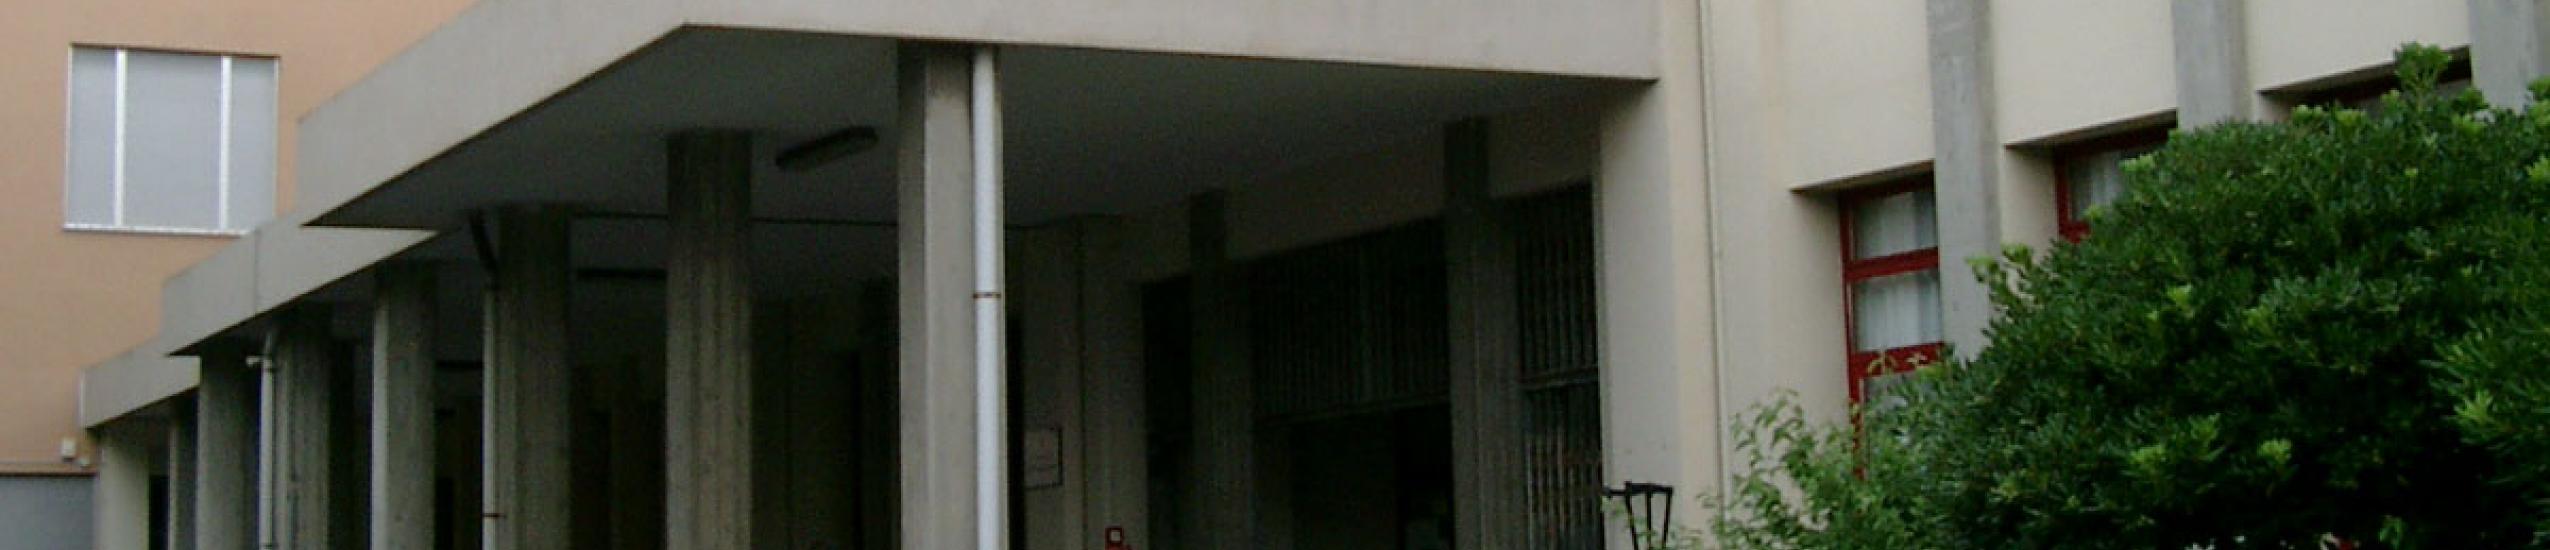 Rete dei “Civic Center Scolastici” - Liceo Lanfranconi Via Antonio Negro, 18